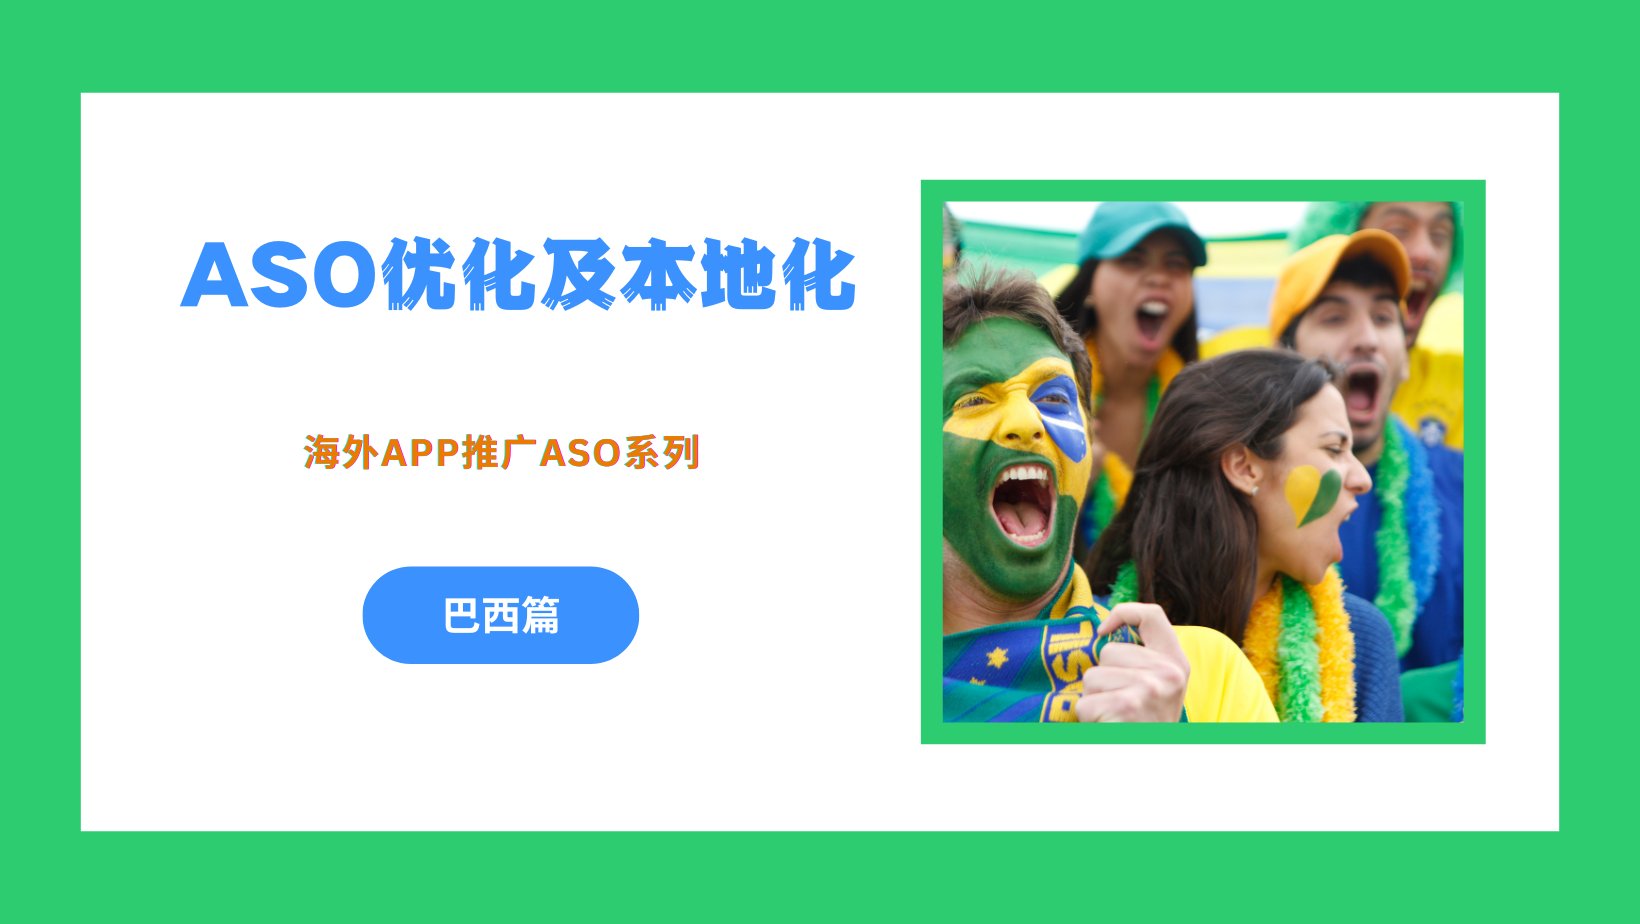 海外App推广之ASO优化及本地化 –巴西篇